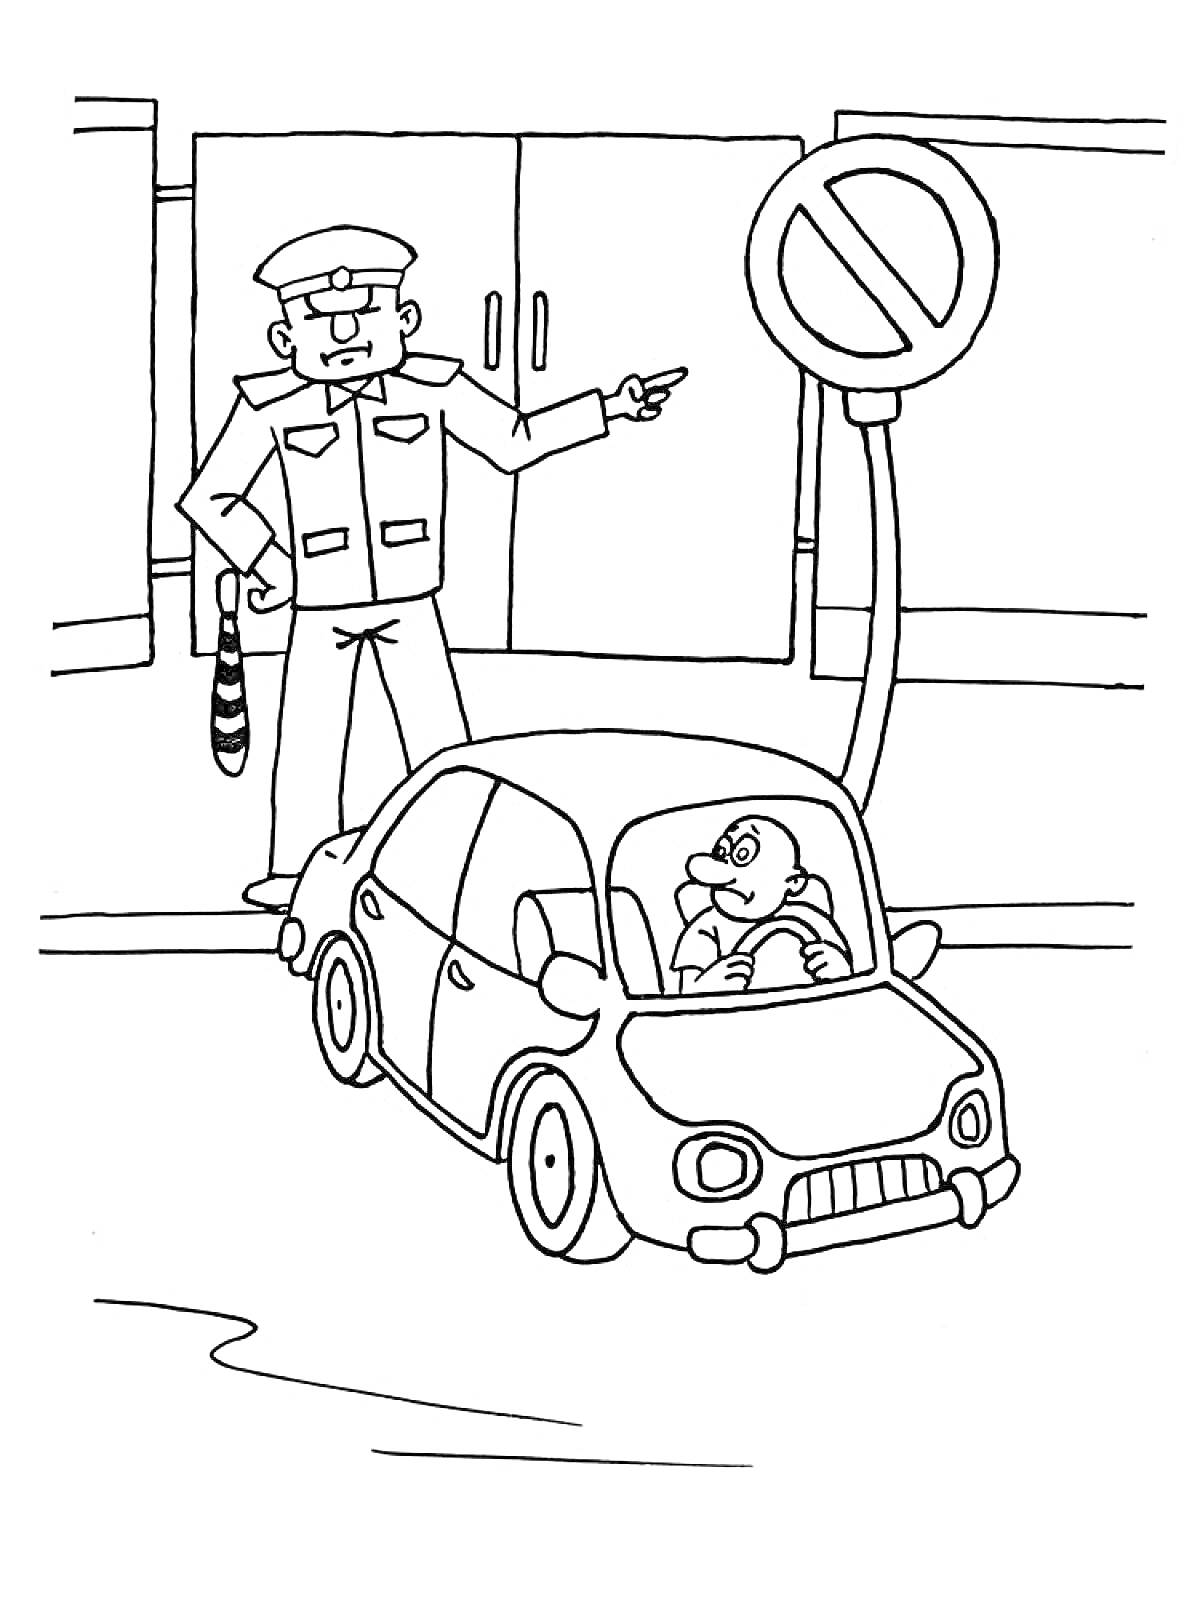 Полицейский останавливает водителя автомобиля рядом со знаком 